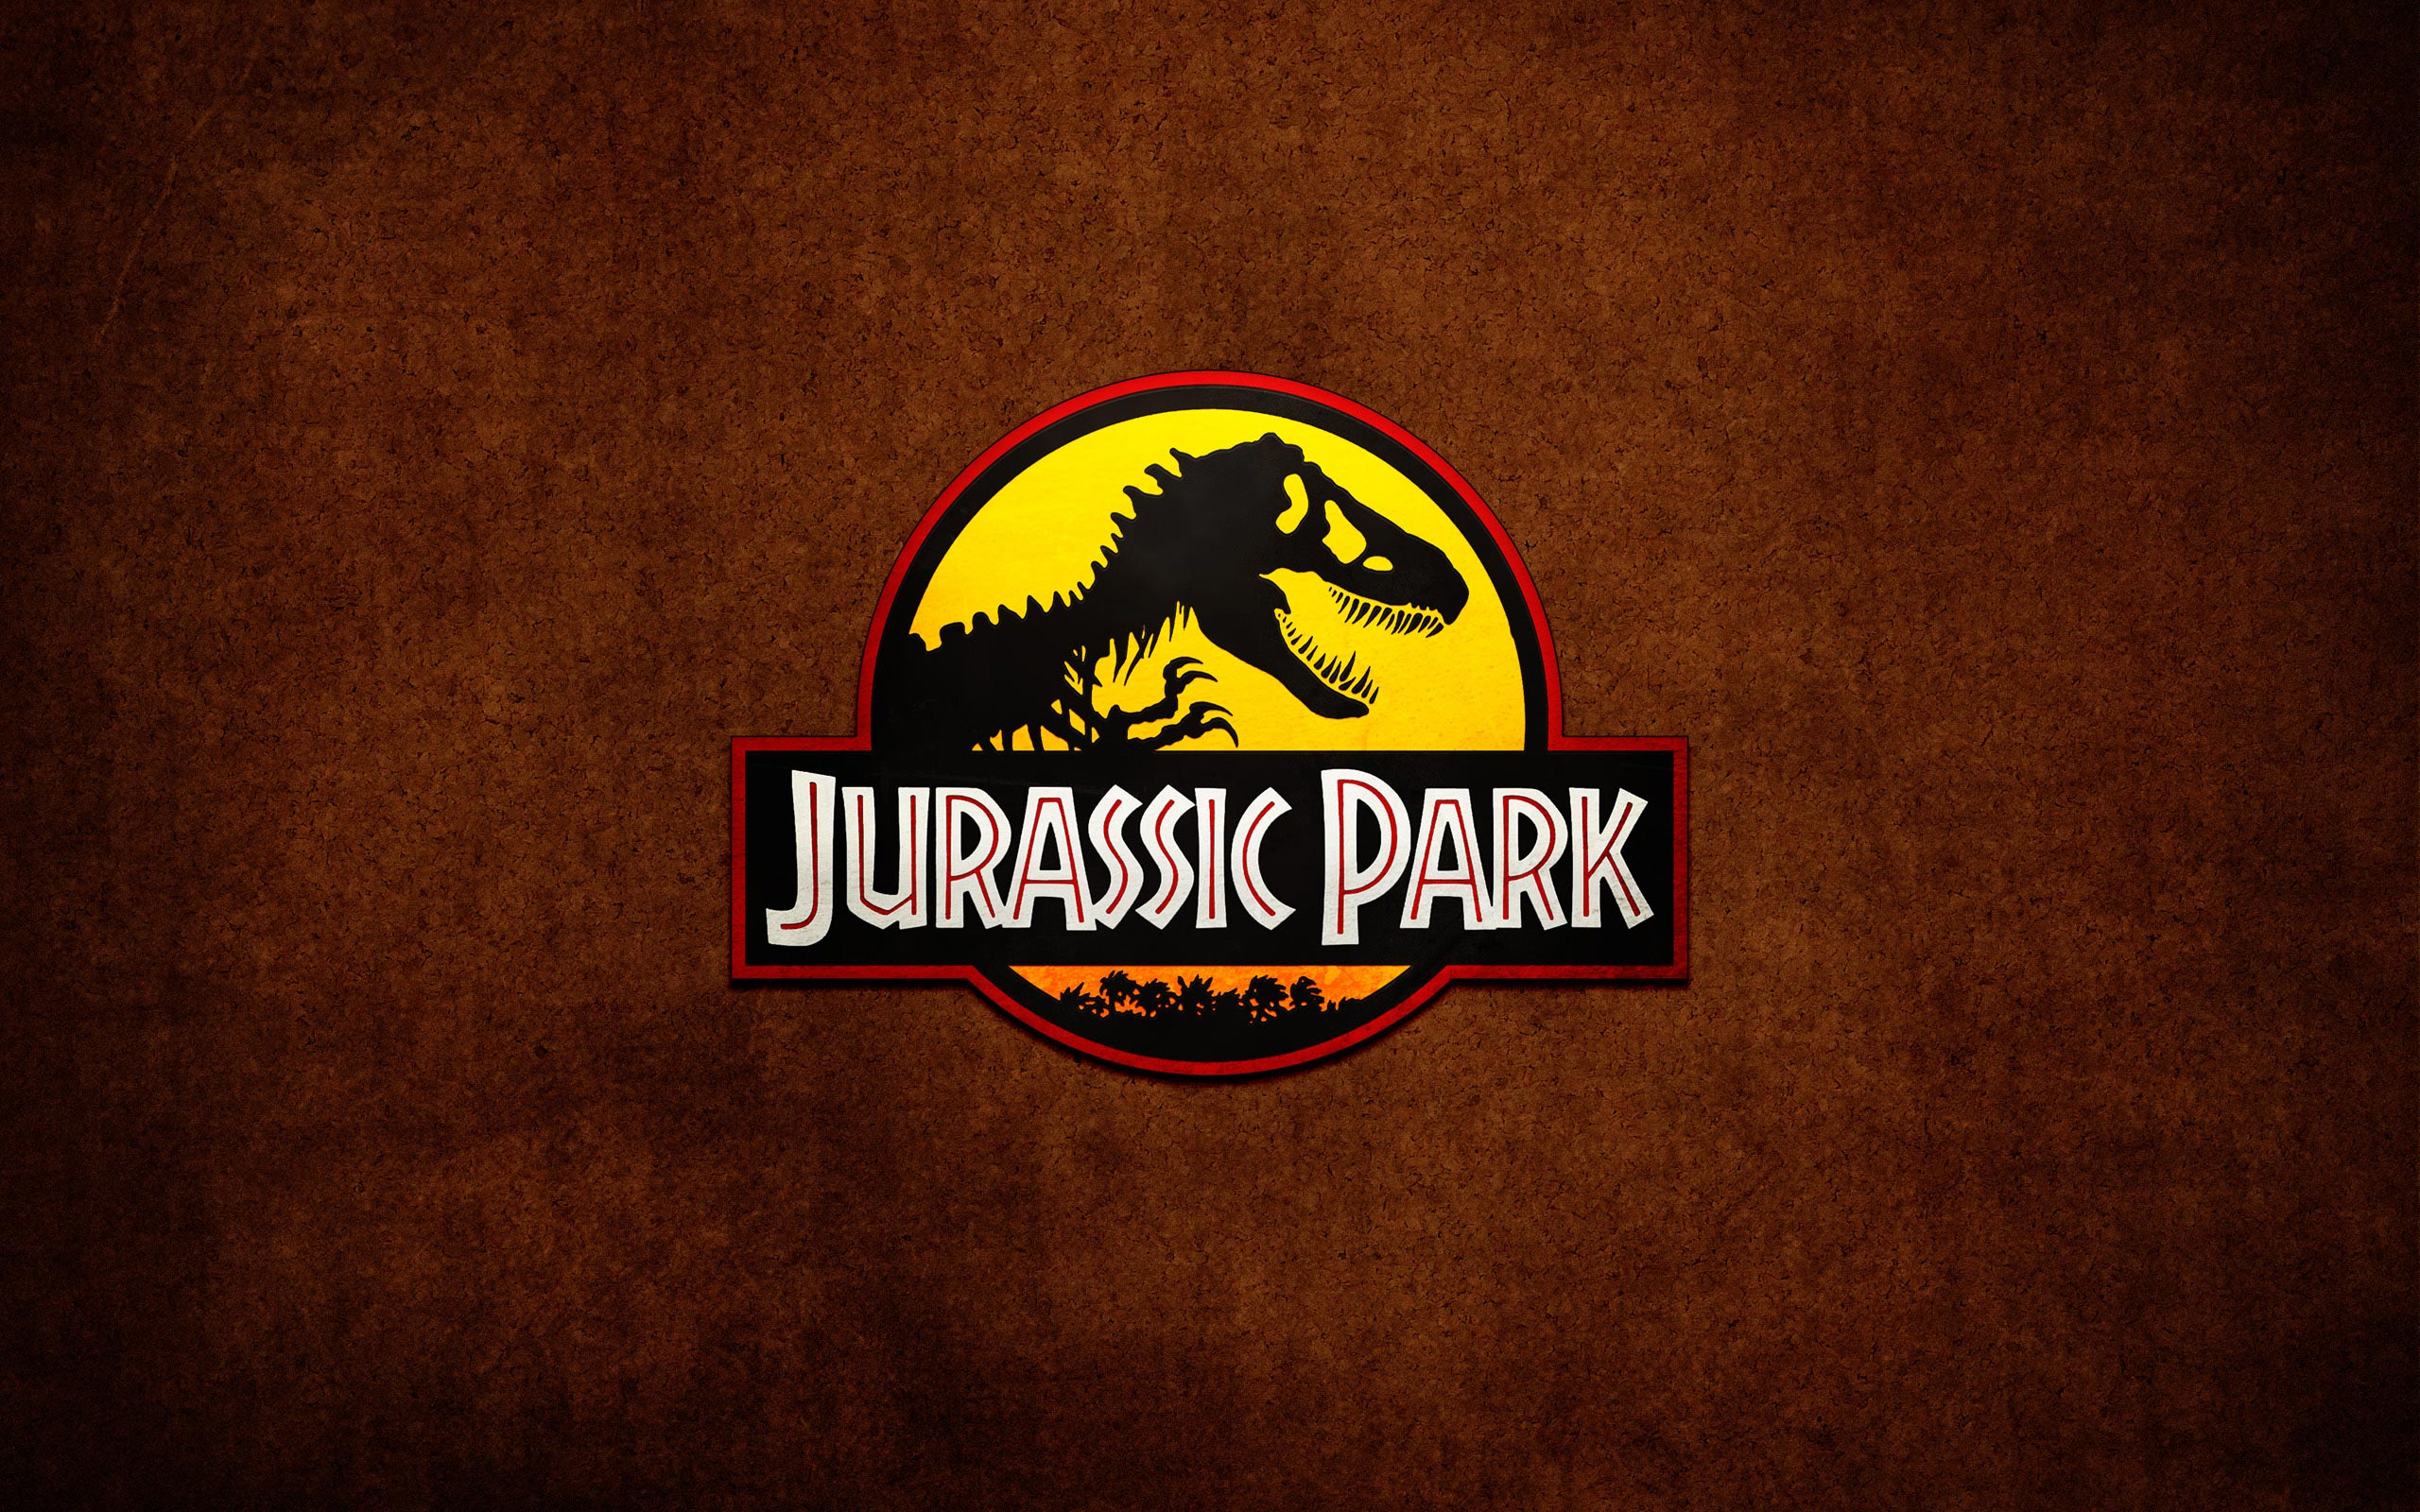 下载手机图片:侏罗纪公园三, 侏罗纪公园, 电影，免费338232。